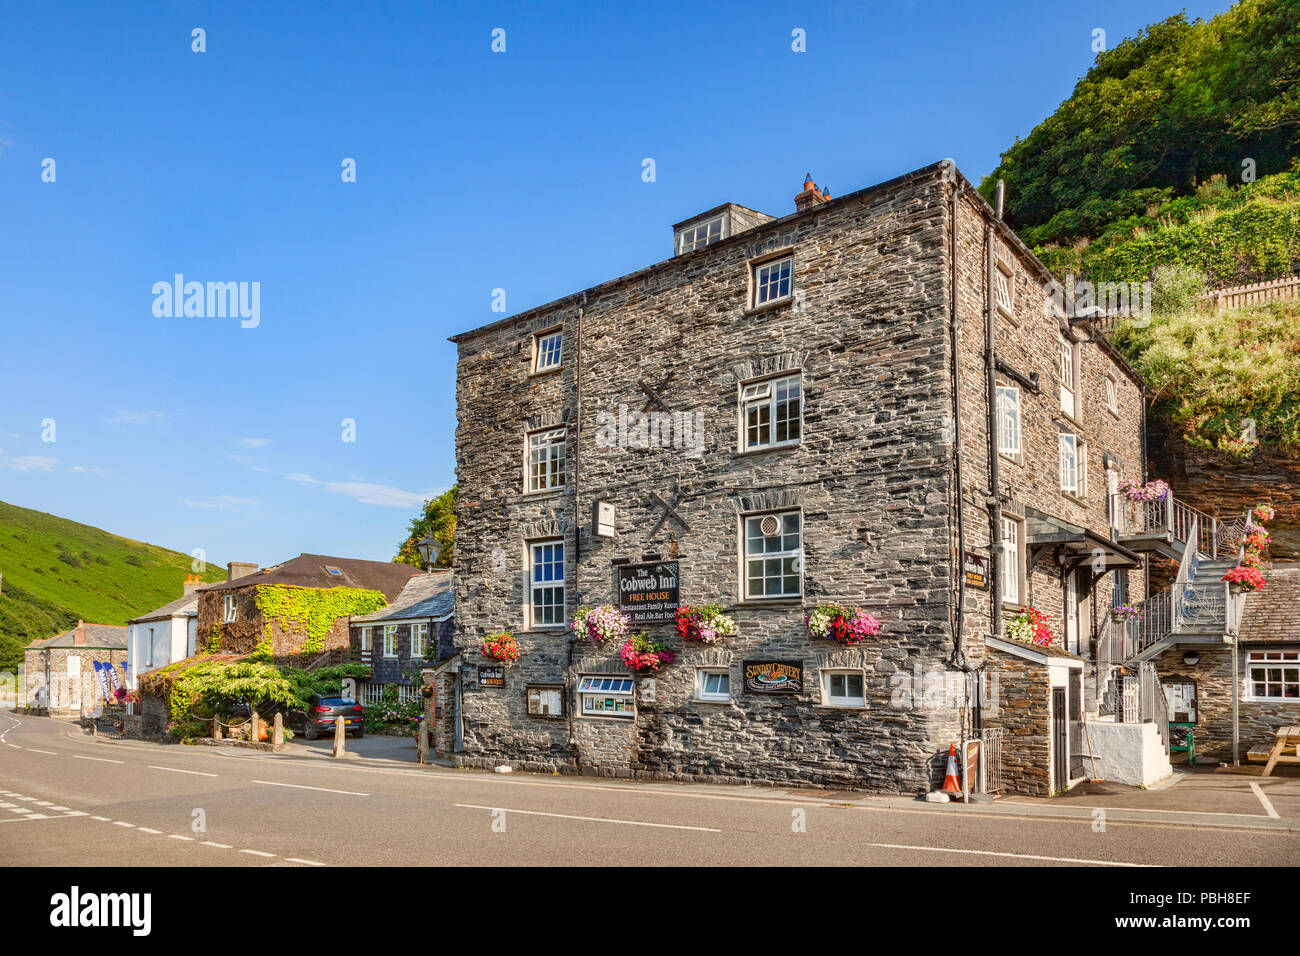 Vom 2. Juli 2018: Garfield, UK: um den Verlauf des Cobwebs Inn, ein Freies Haus in der Cornish Dorf. Stockfoto